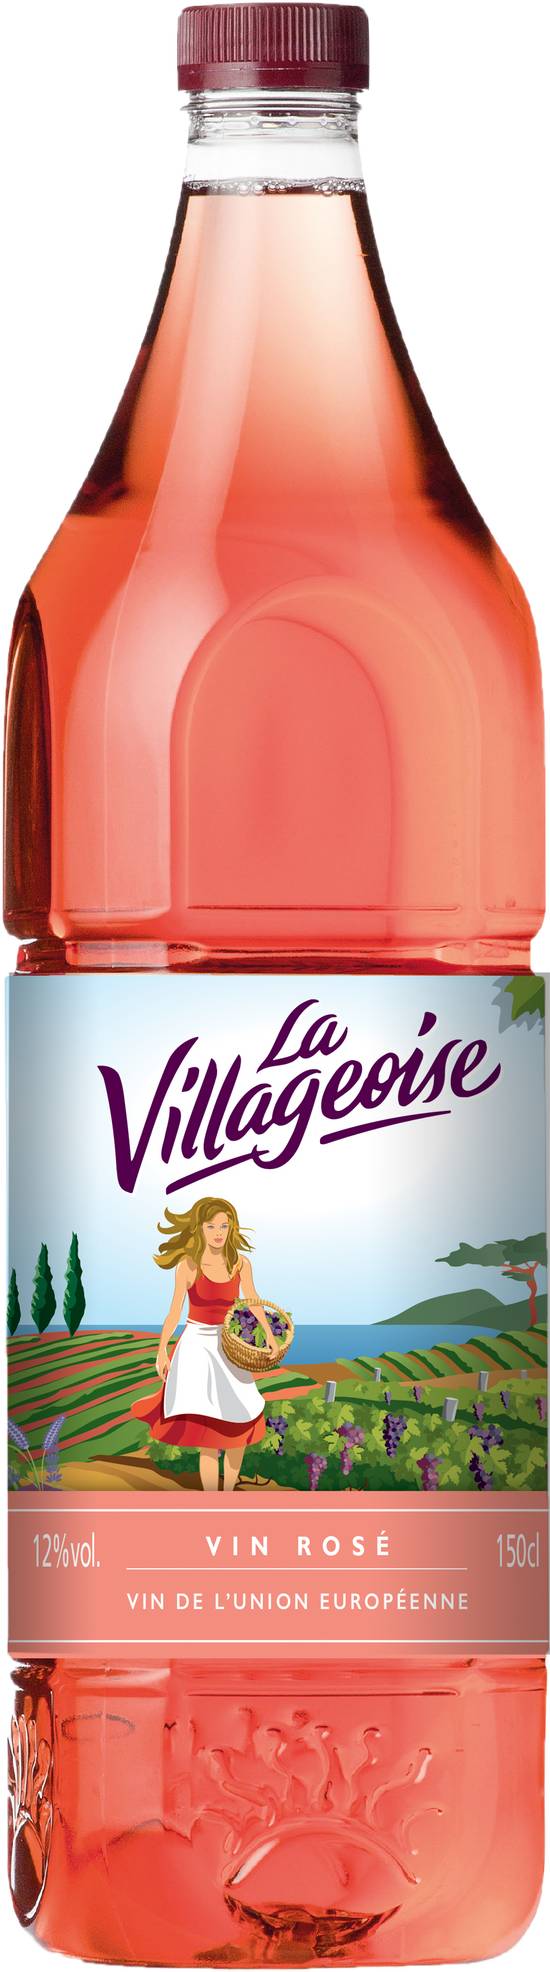 La Villageoise - Vin rosé ( 1.5 L)